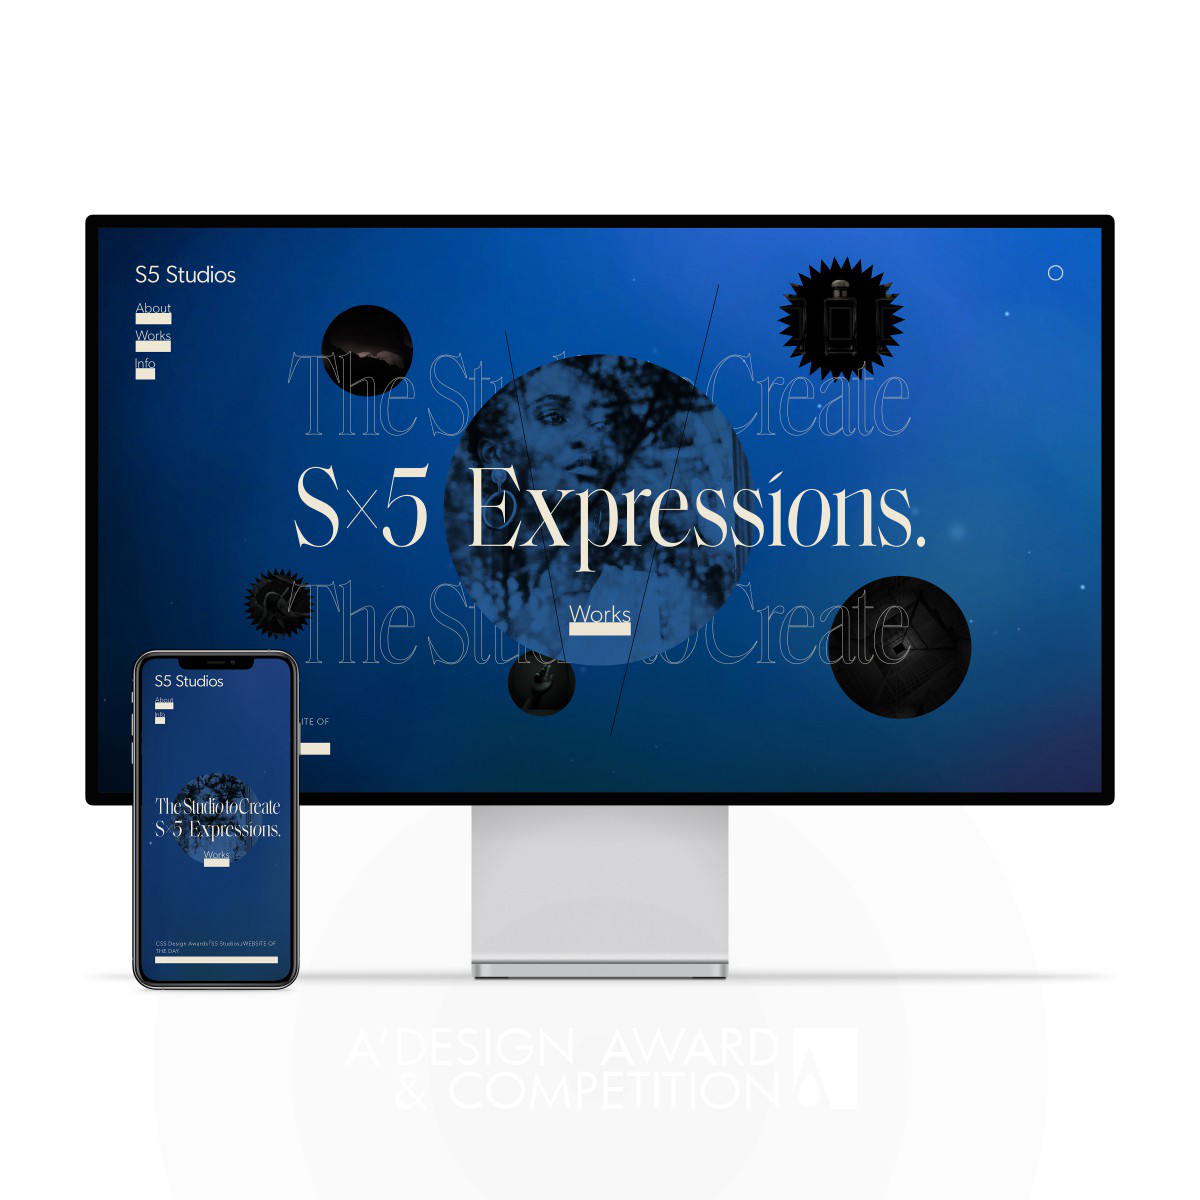 S5 Studios: Eine einzigartige Website, die Design und Technologie vereint